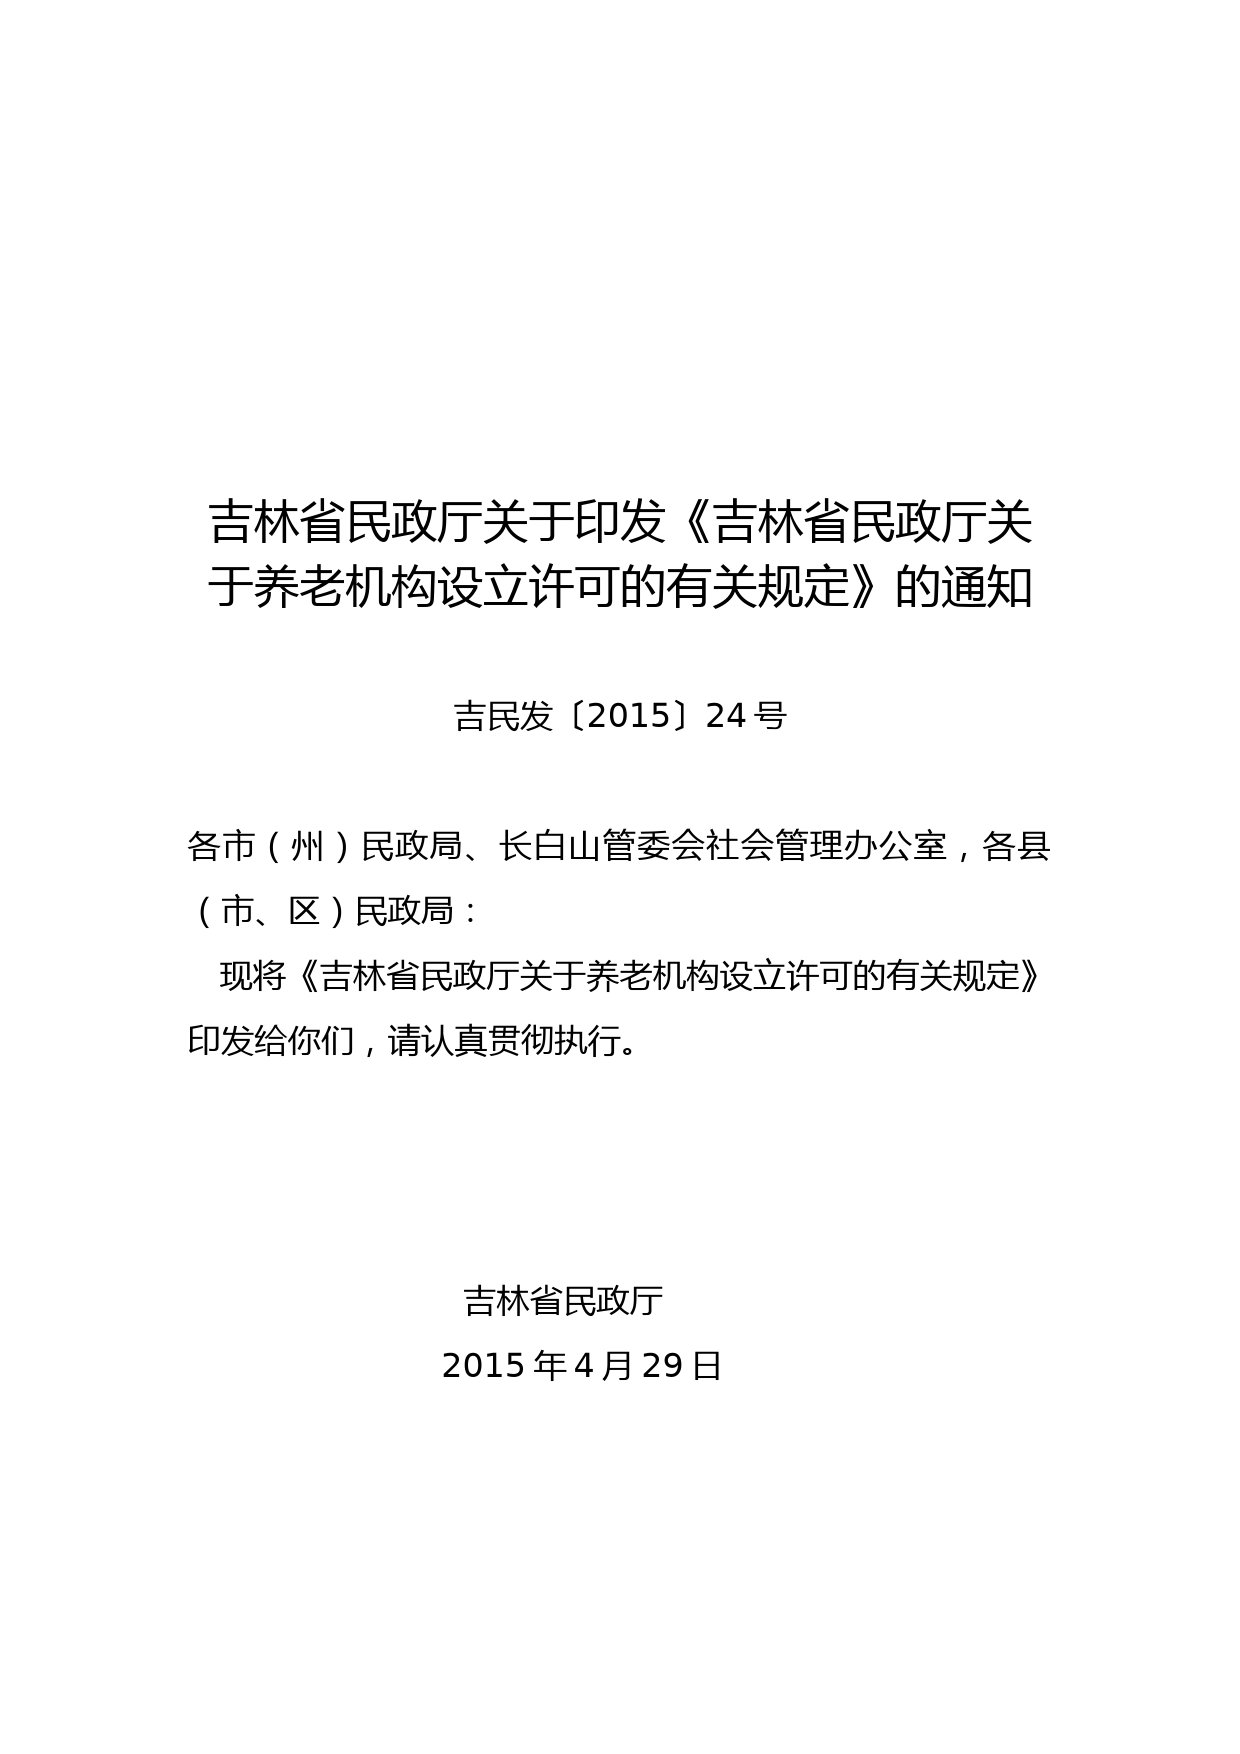 吉林省民政厅关于养老机构设立许可的有关规定【模板】